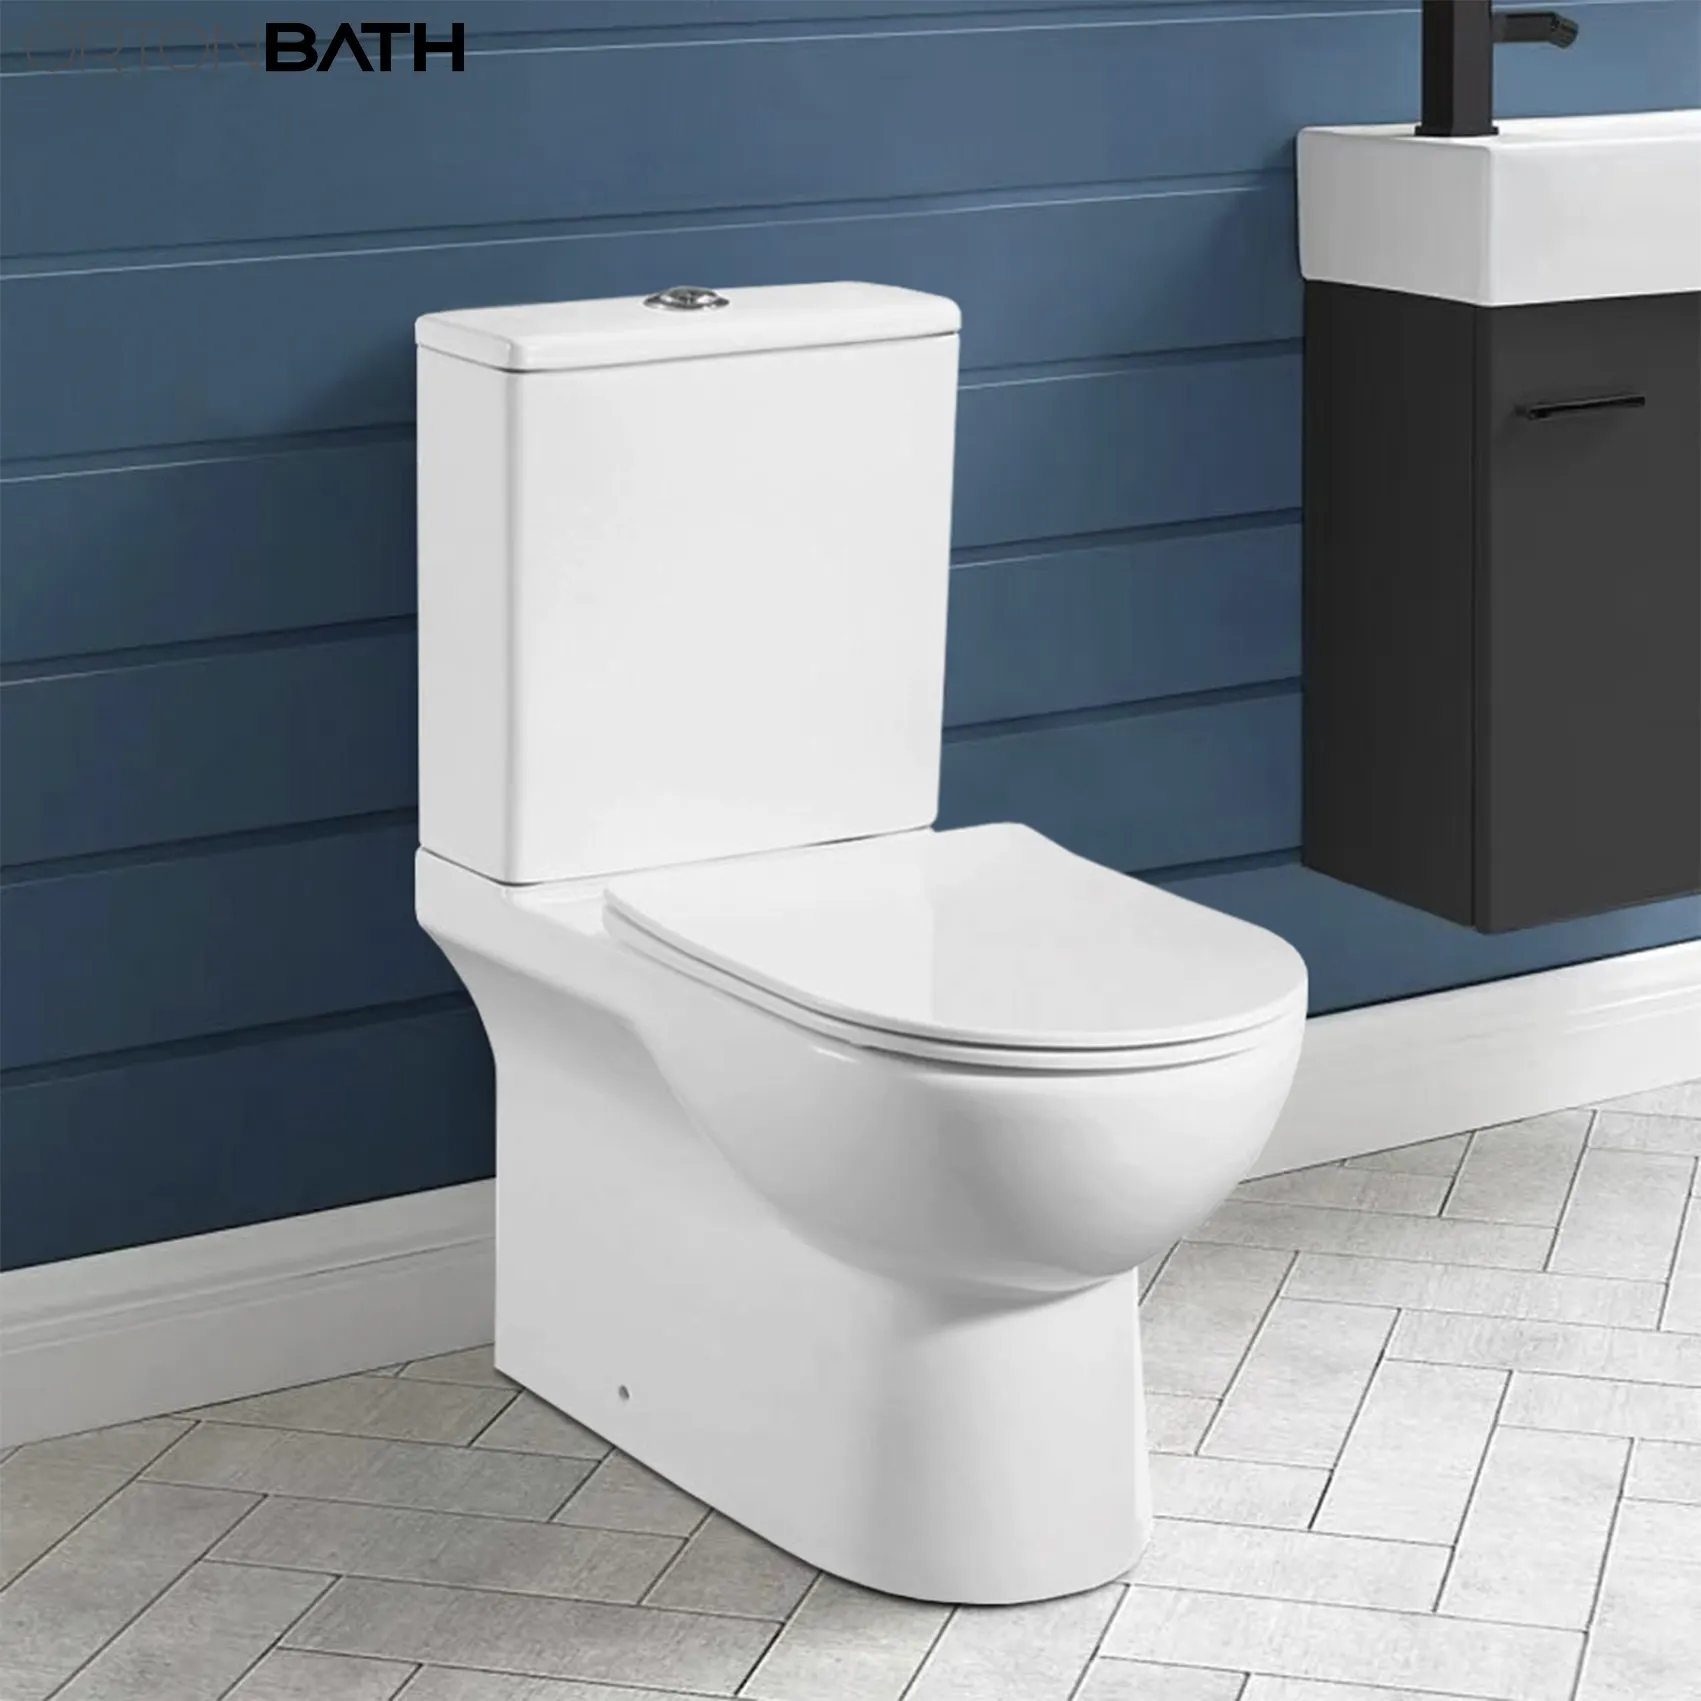 ORTONBATH Europe Doppel-Spültoilette Bäder Bequemkeit Höhe weich-nähe randloses Wc-Toilettenset Zwei-Teile Wc-Toilette